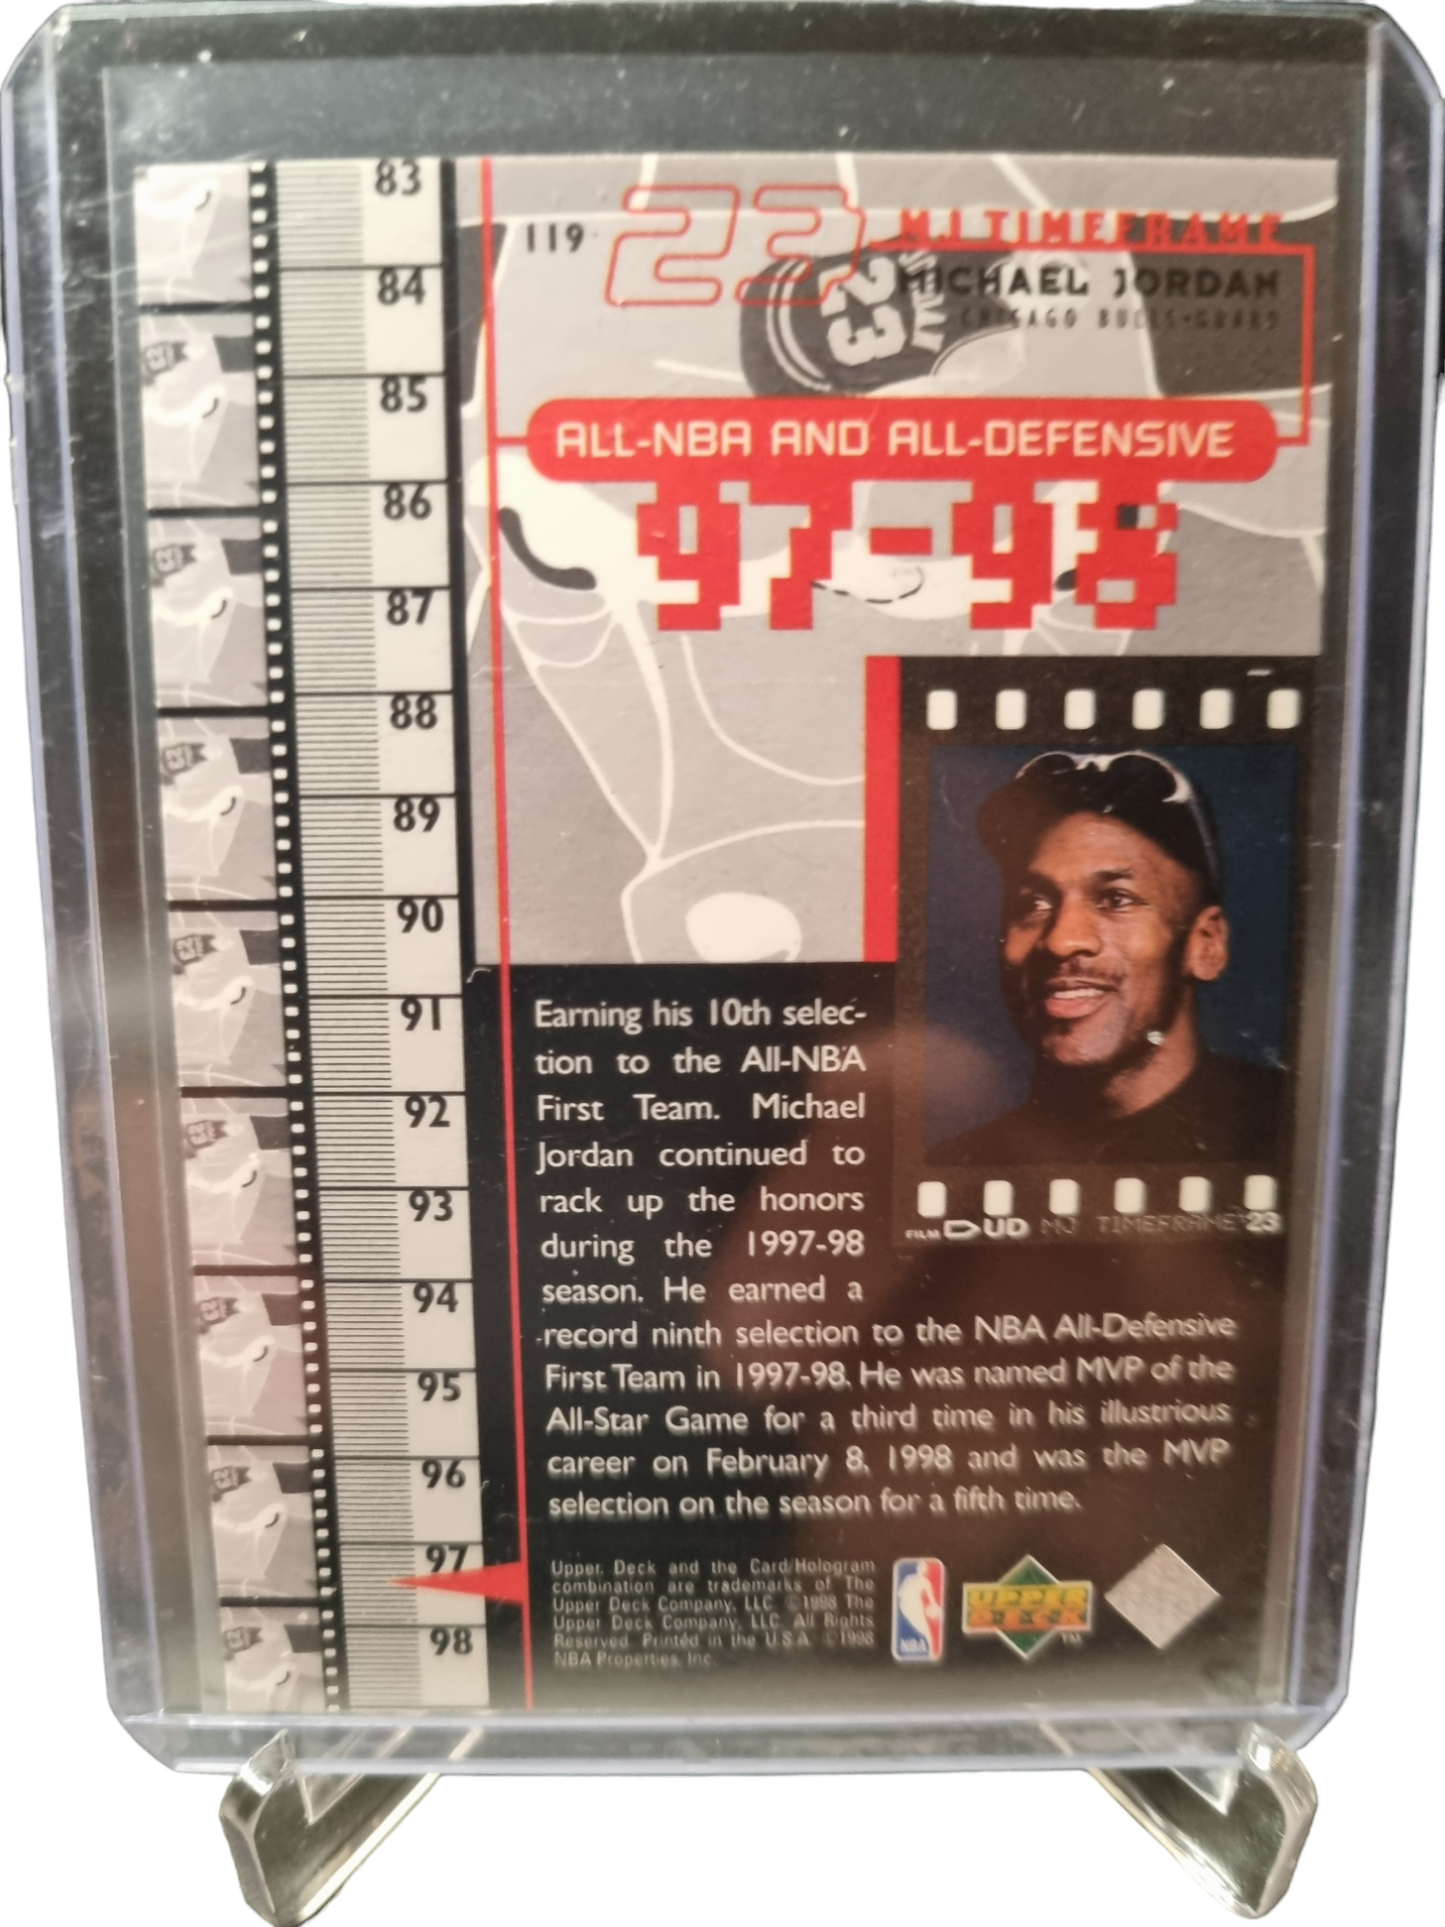 1998 Upper Deck #119 Michael Jordan All-NBA and All-Defensive